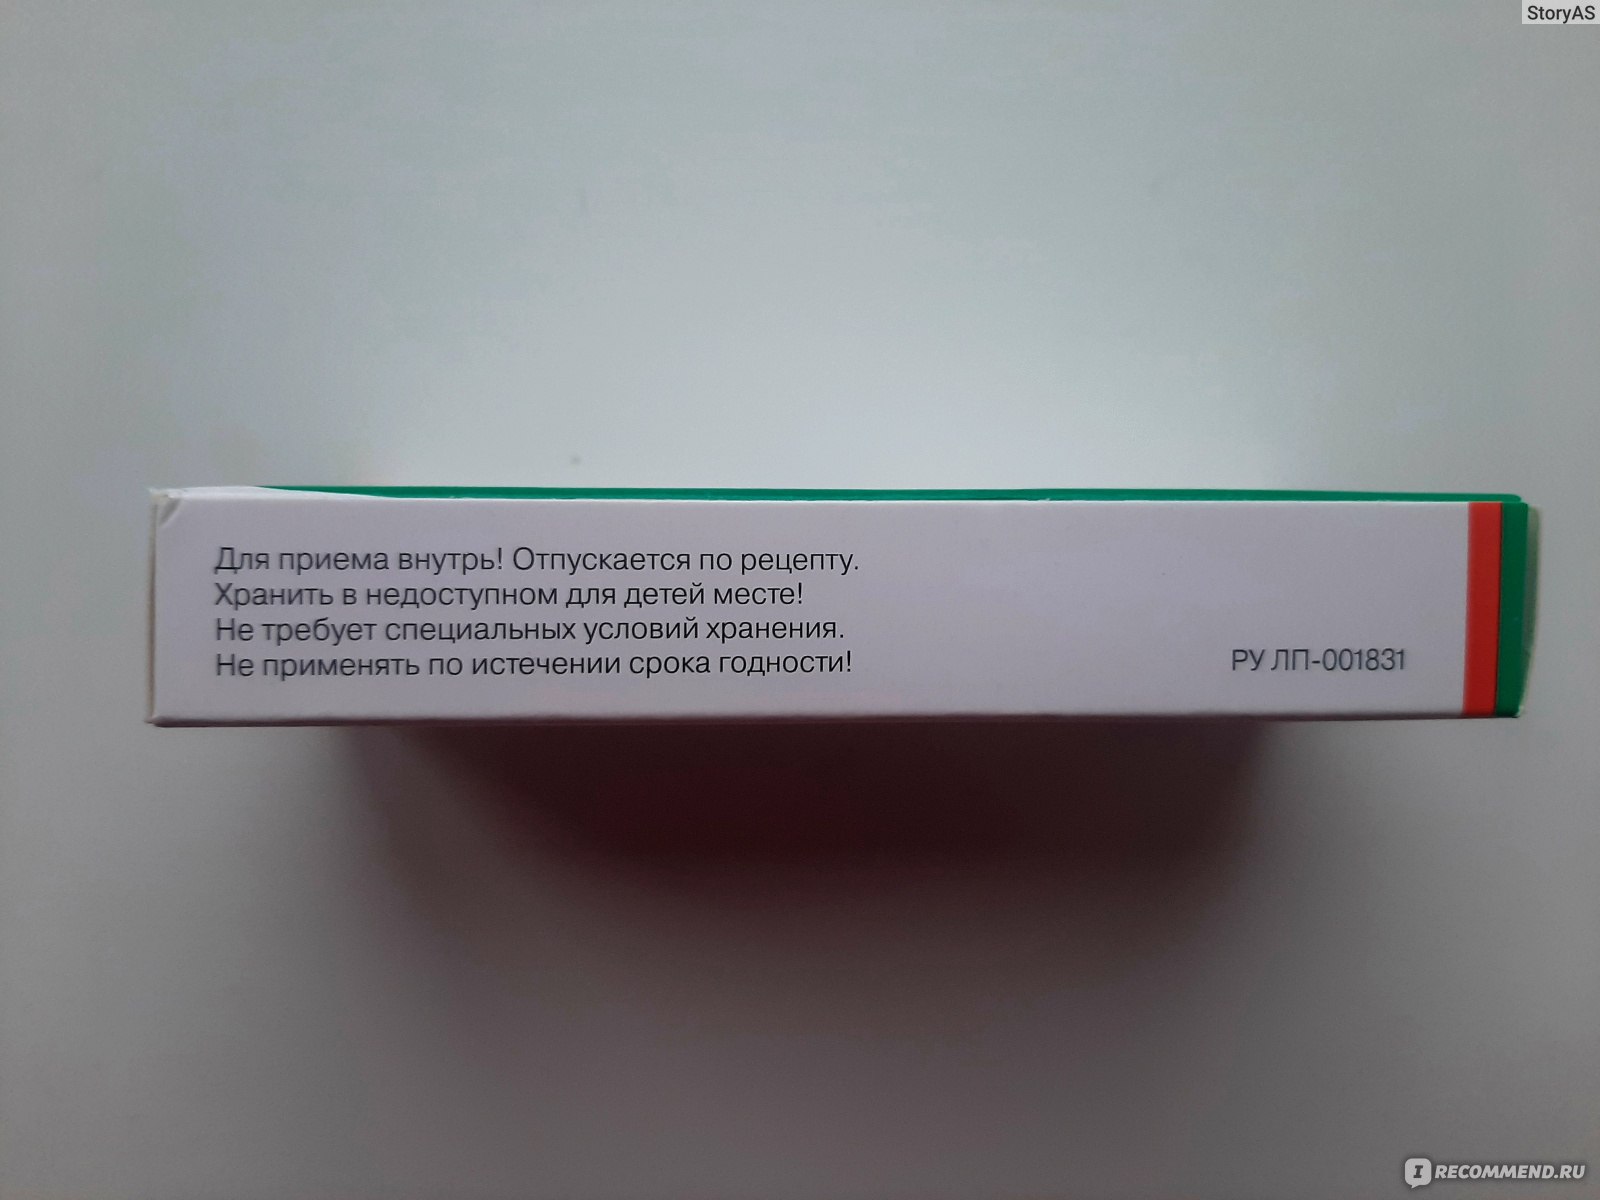 Лекарственный препарат Pro.Med.CS.Praha a.s. Ребагит (ребамипид) - «В .